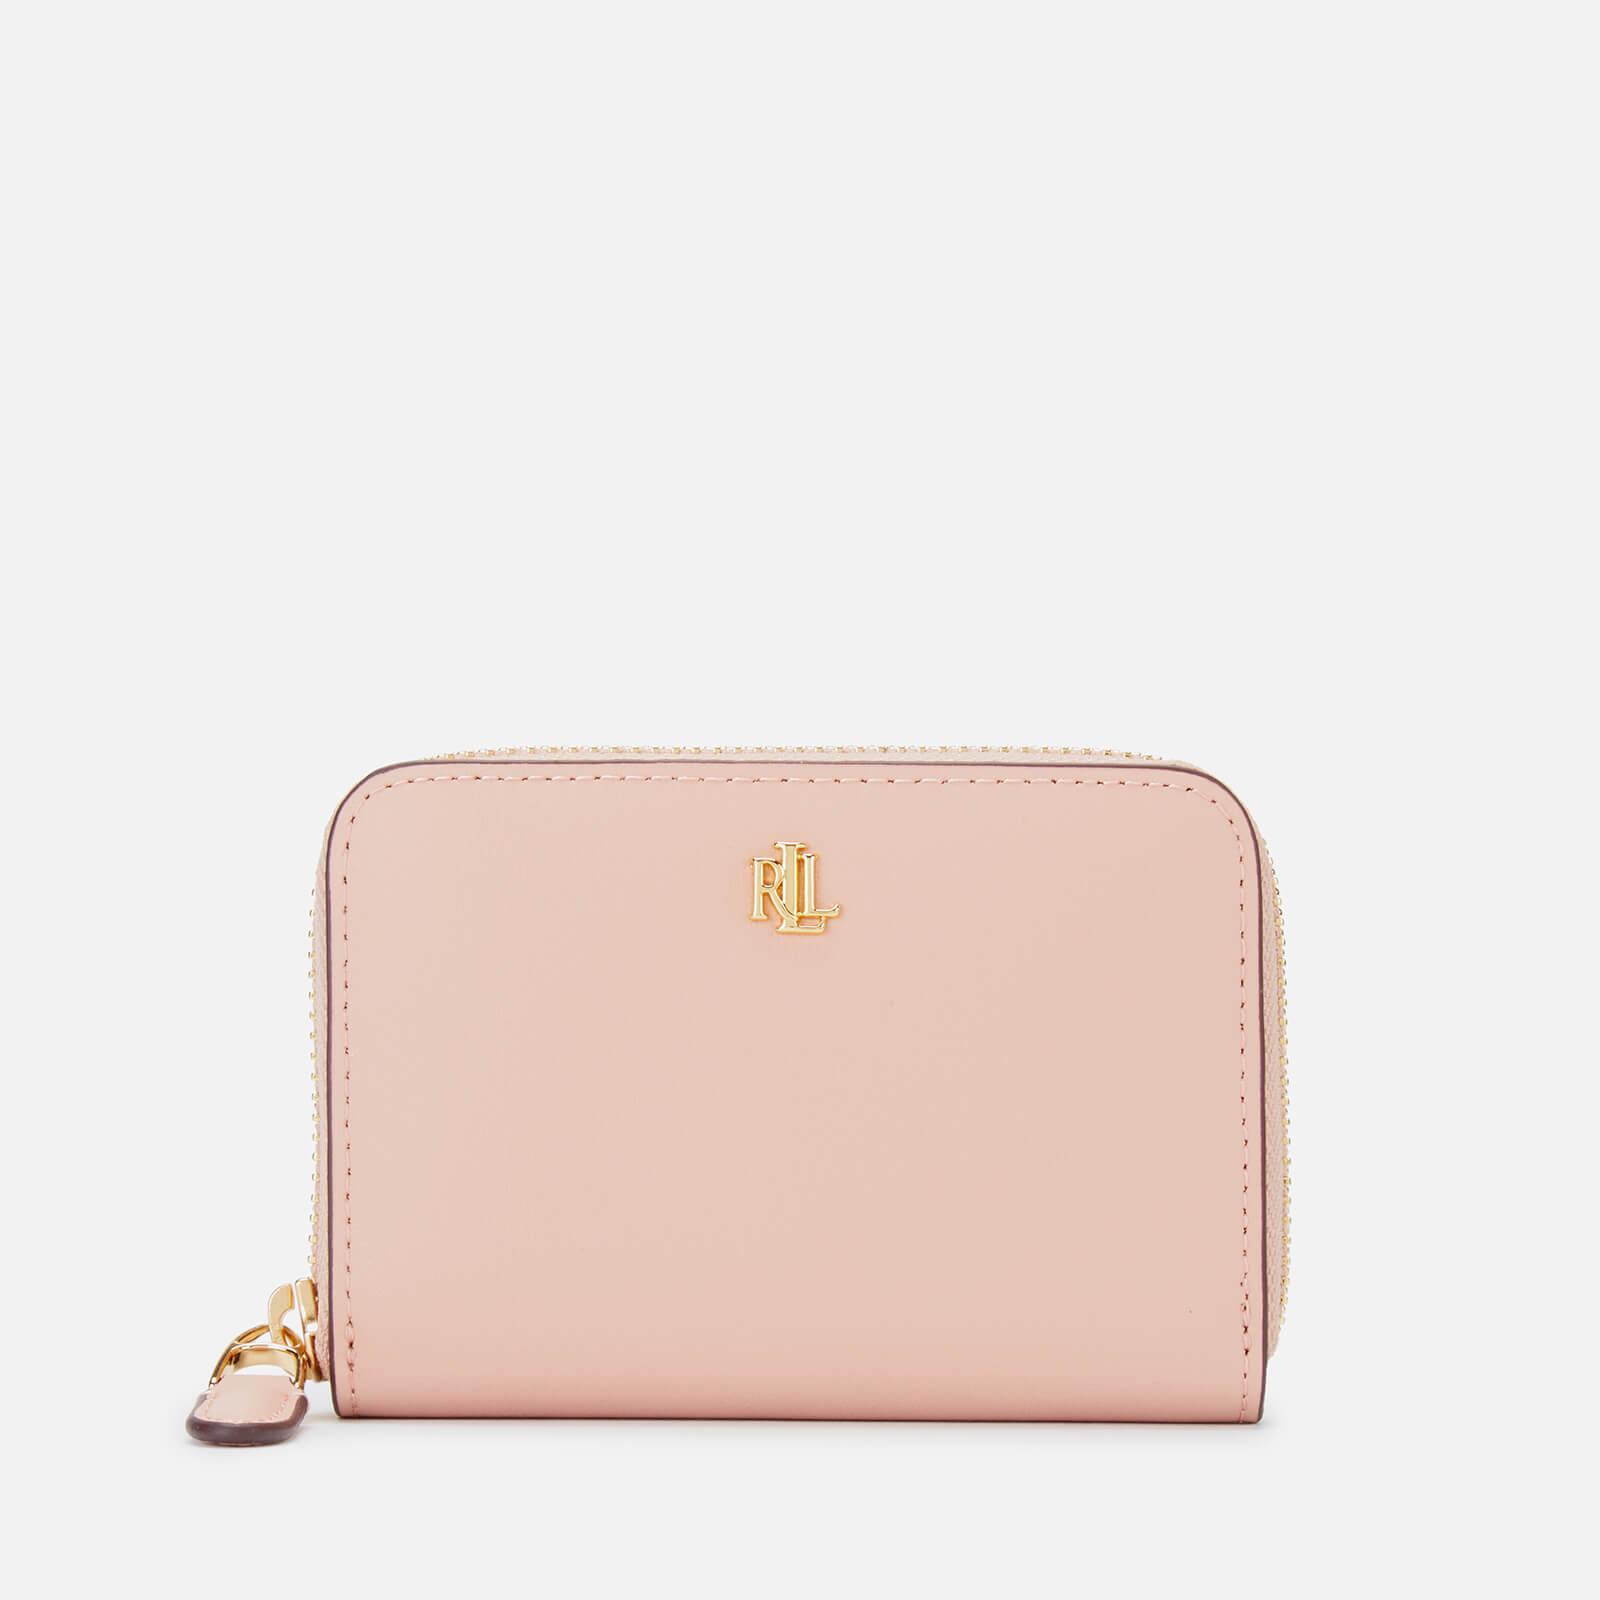 Lauren by Ralph Lauren Leather Small Zip Wallet in Pink - Lyst